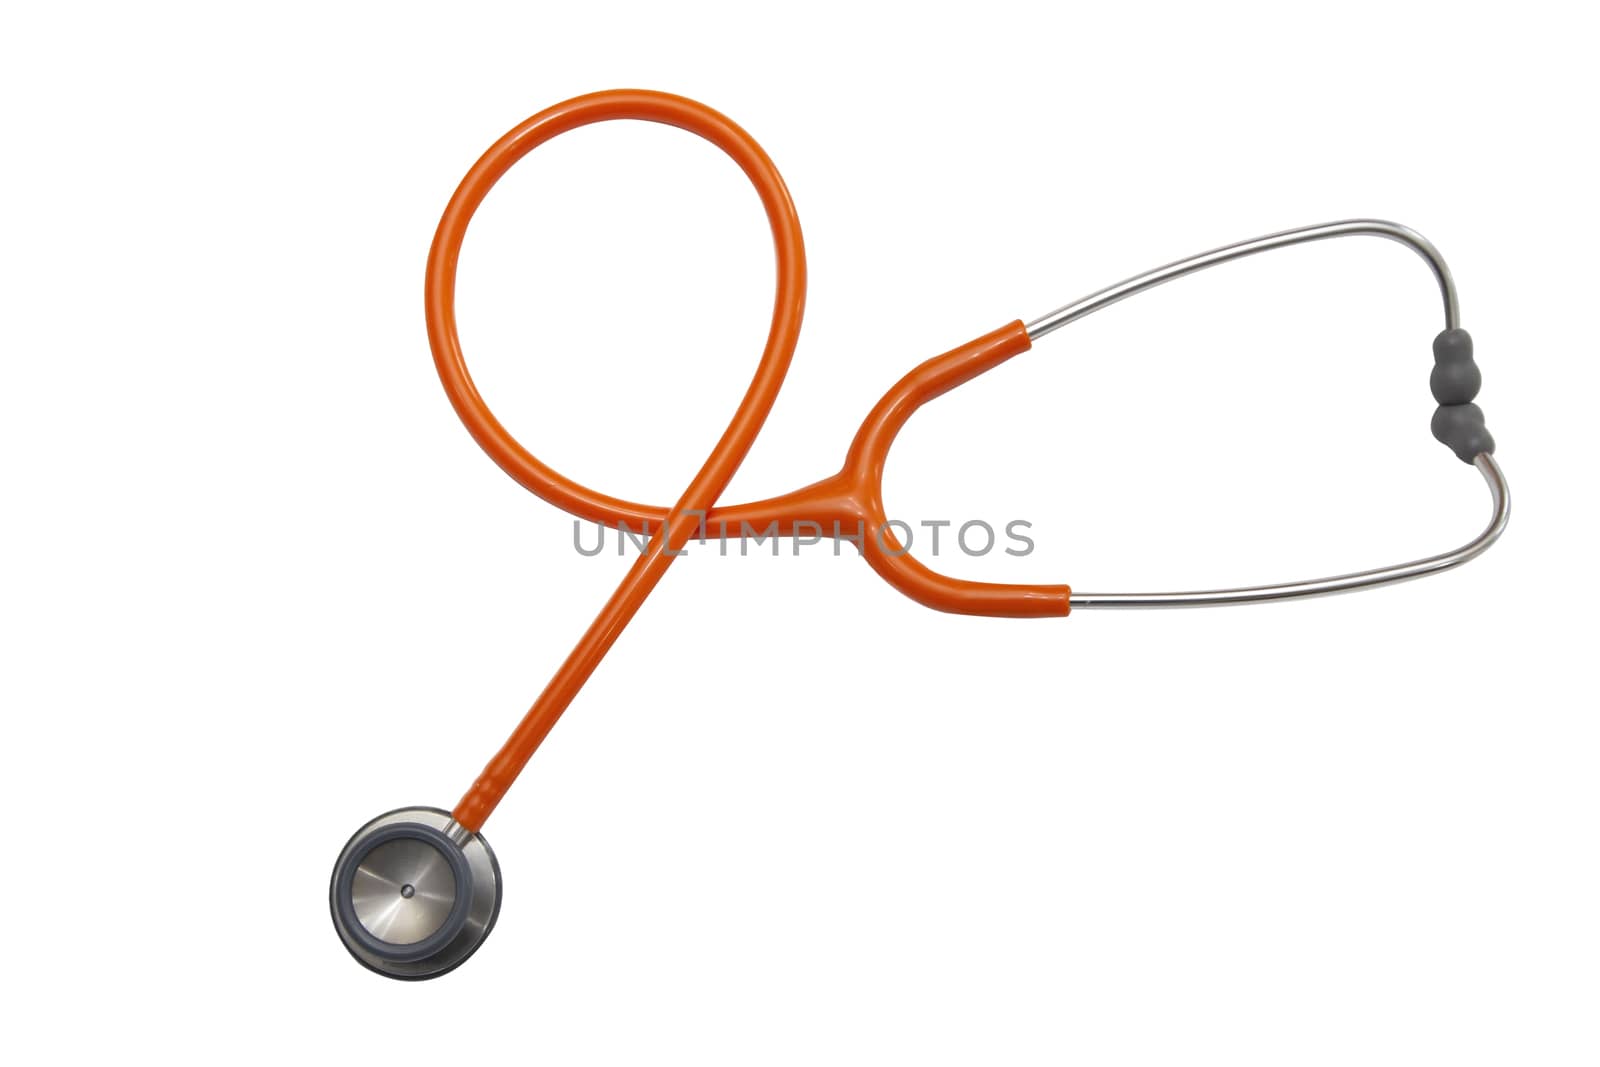 isolated orange stethoscope on white background by Charnsitr